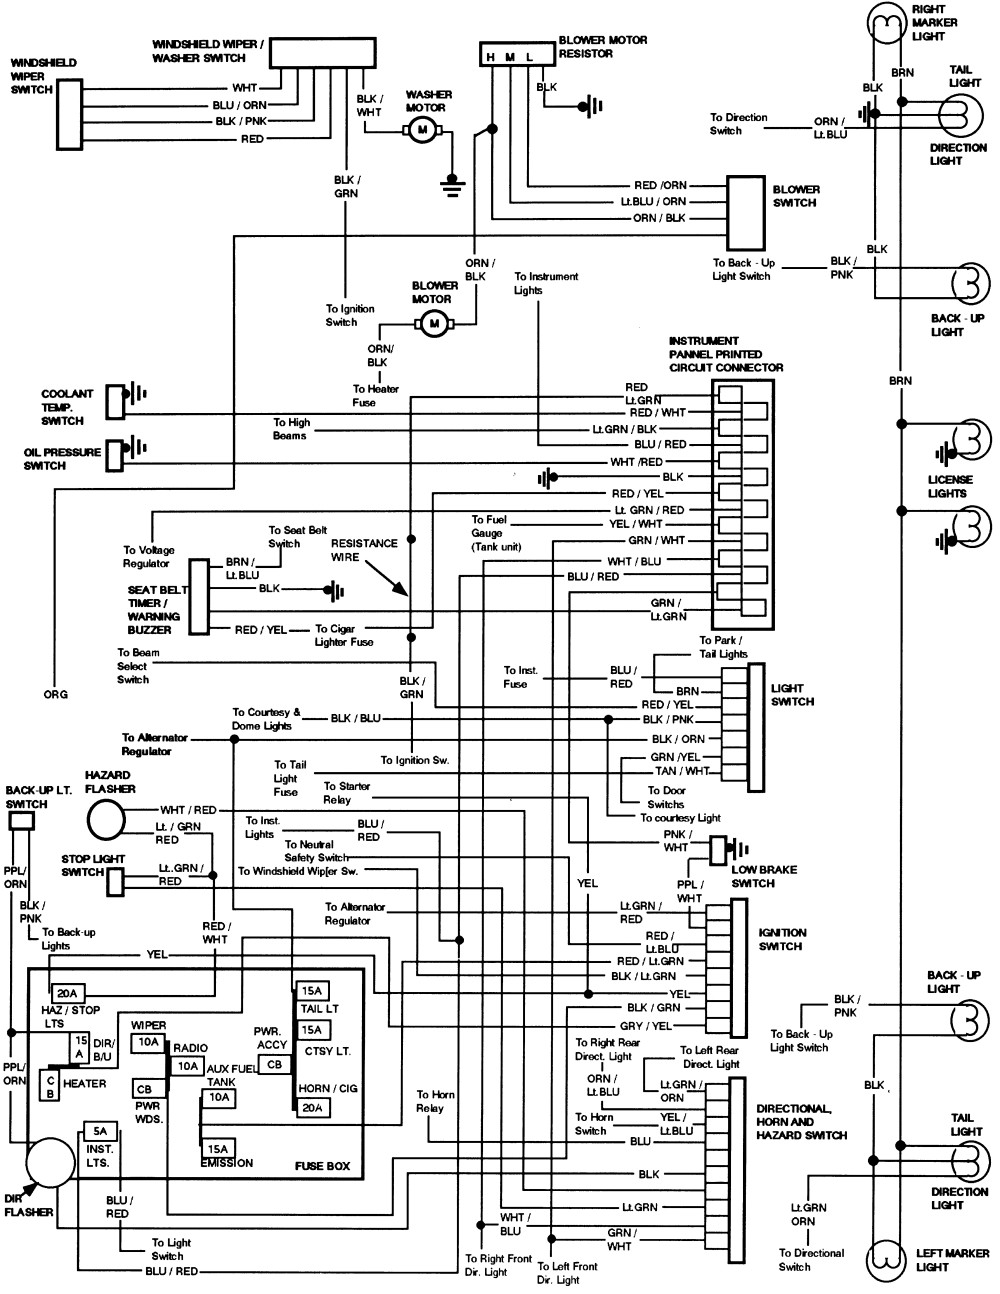 Wiring Diagram For 1984 Ford F150 Wiring Diagram 2000 Ford F 150 Wiring Diagram 1991 Ford F 150 Wiring Diagram